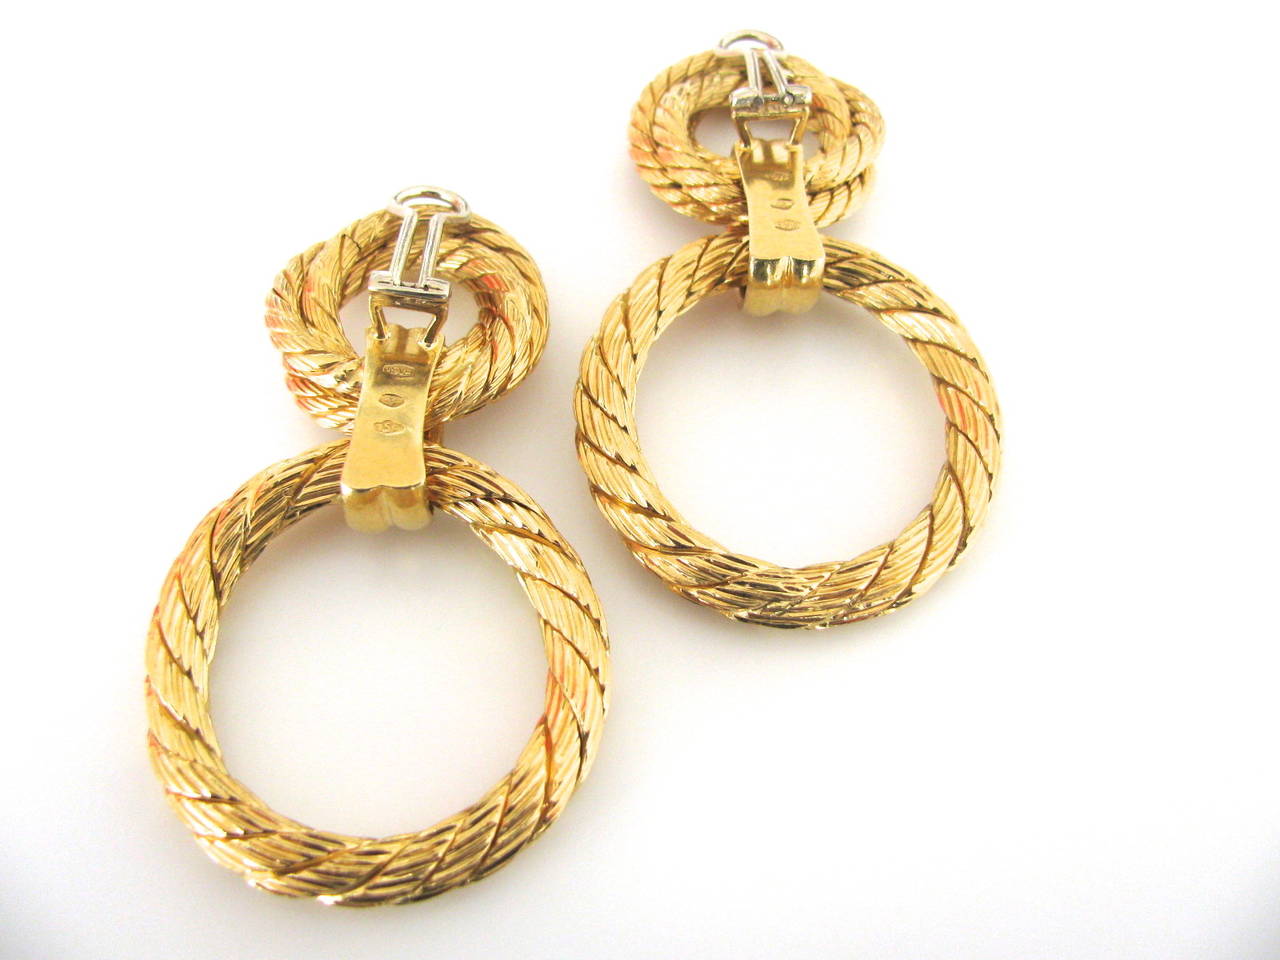 A Good-looking pair of gold doorknocker earrings. A pair of 2 1/2